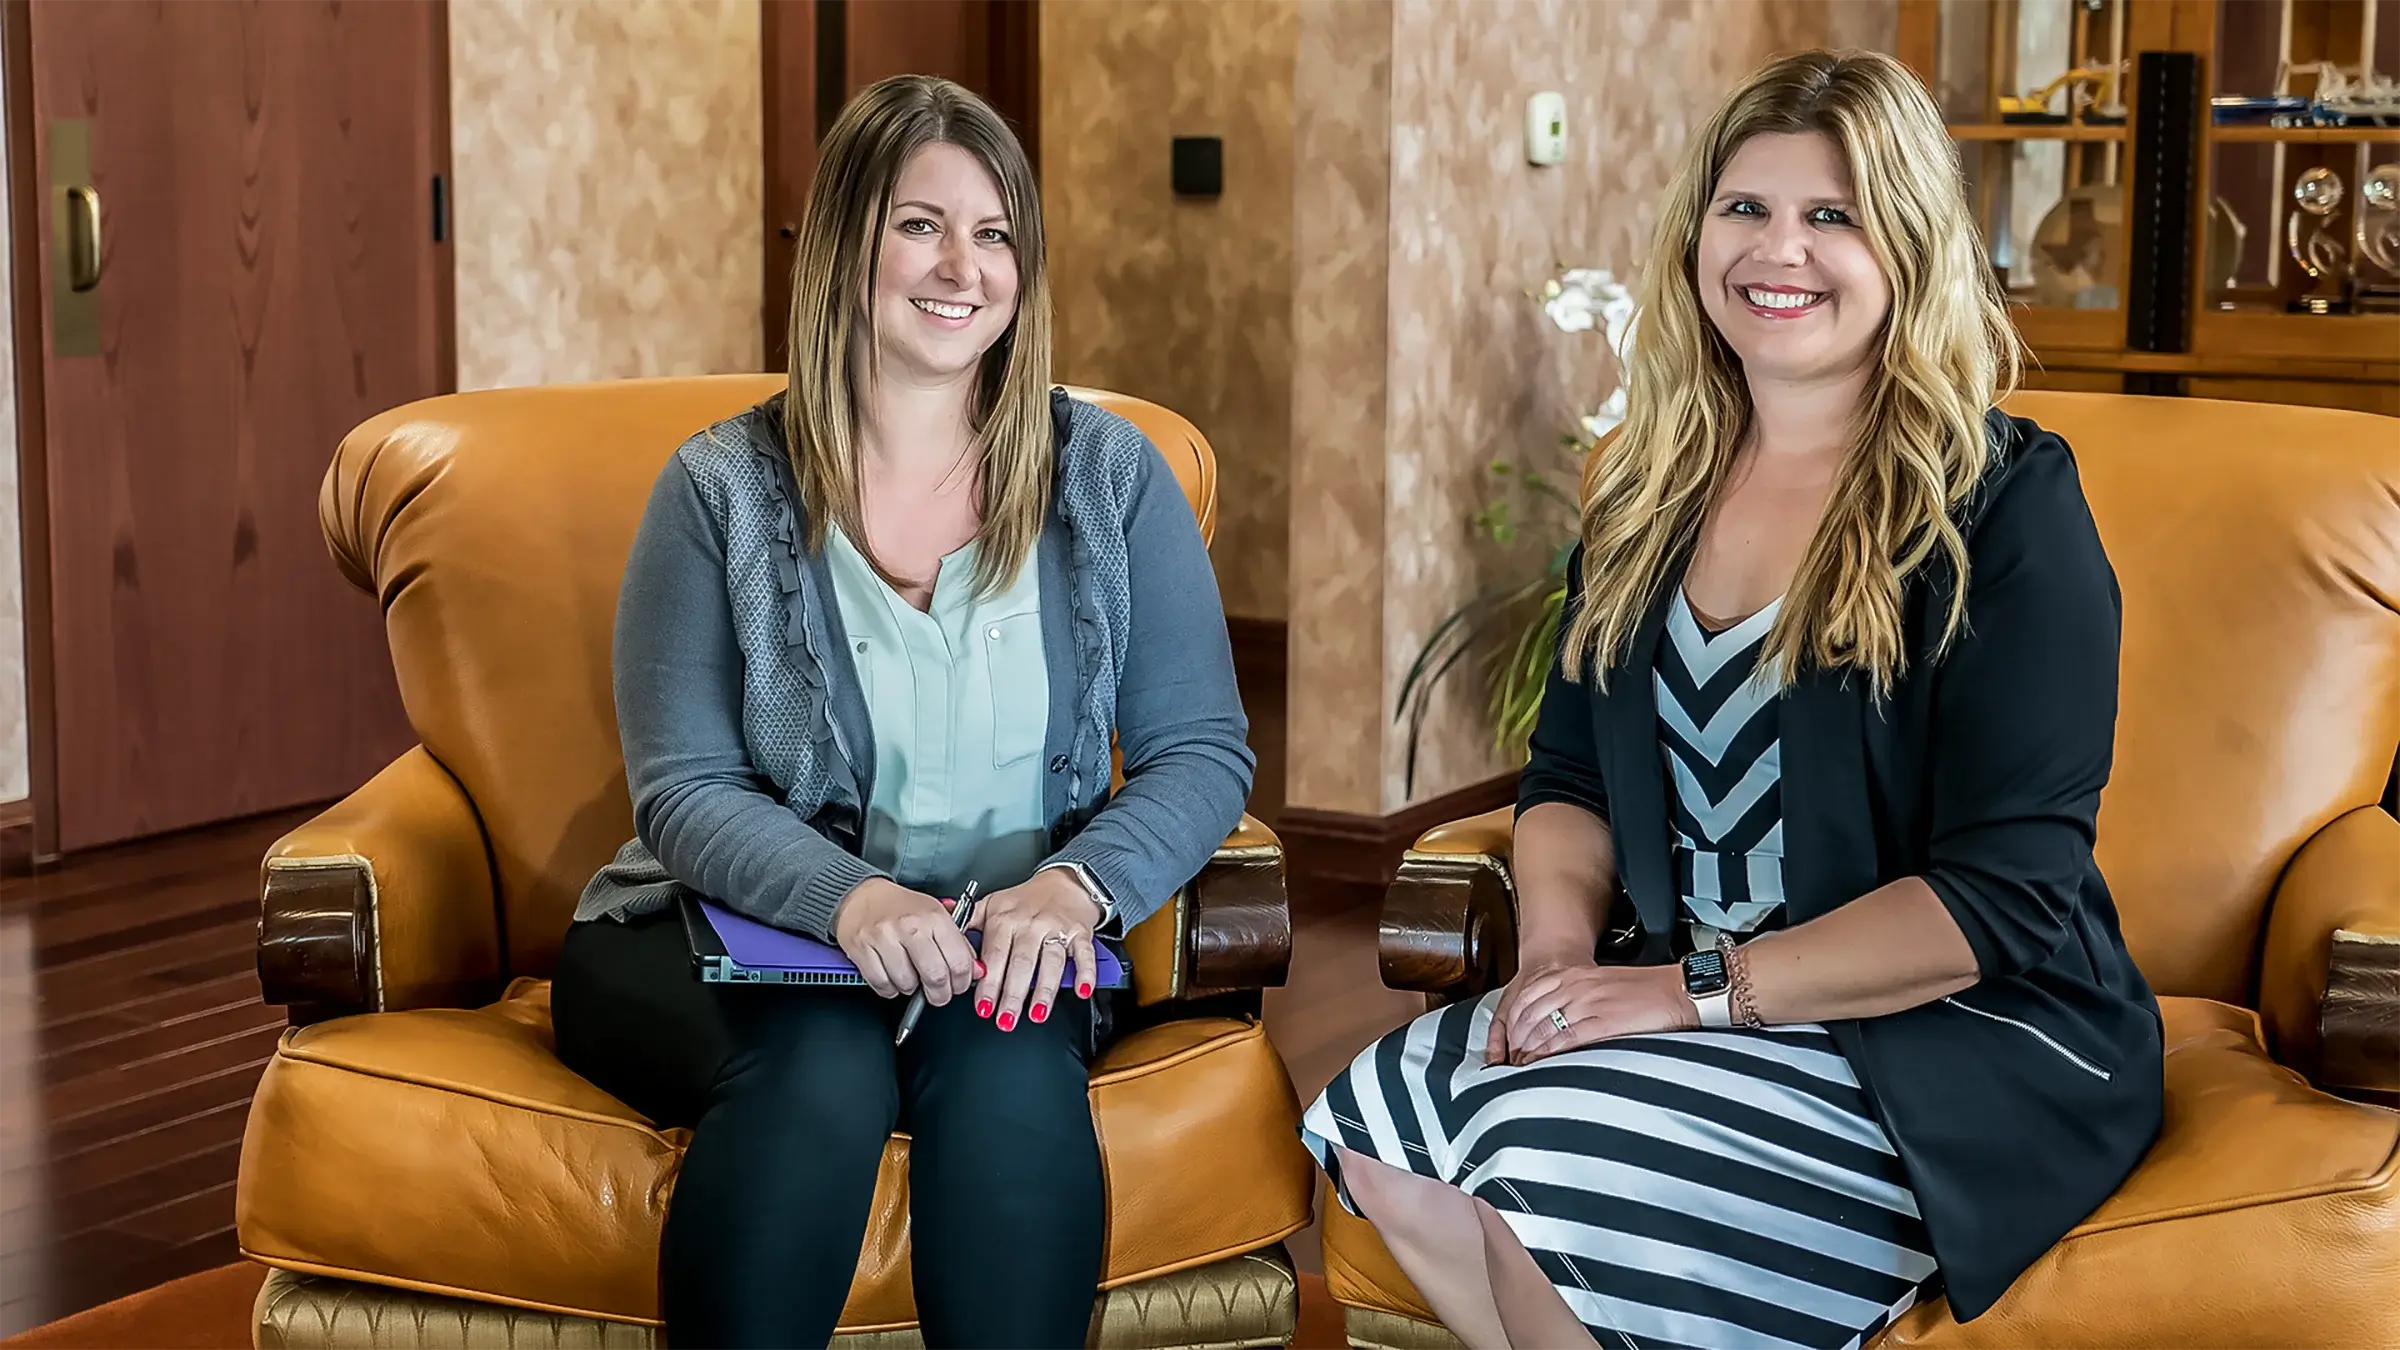 Two women sit in a lobby